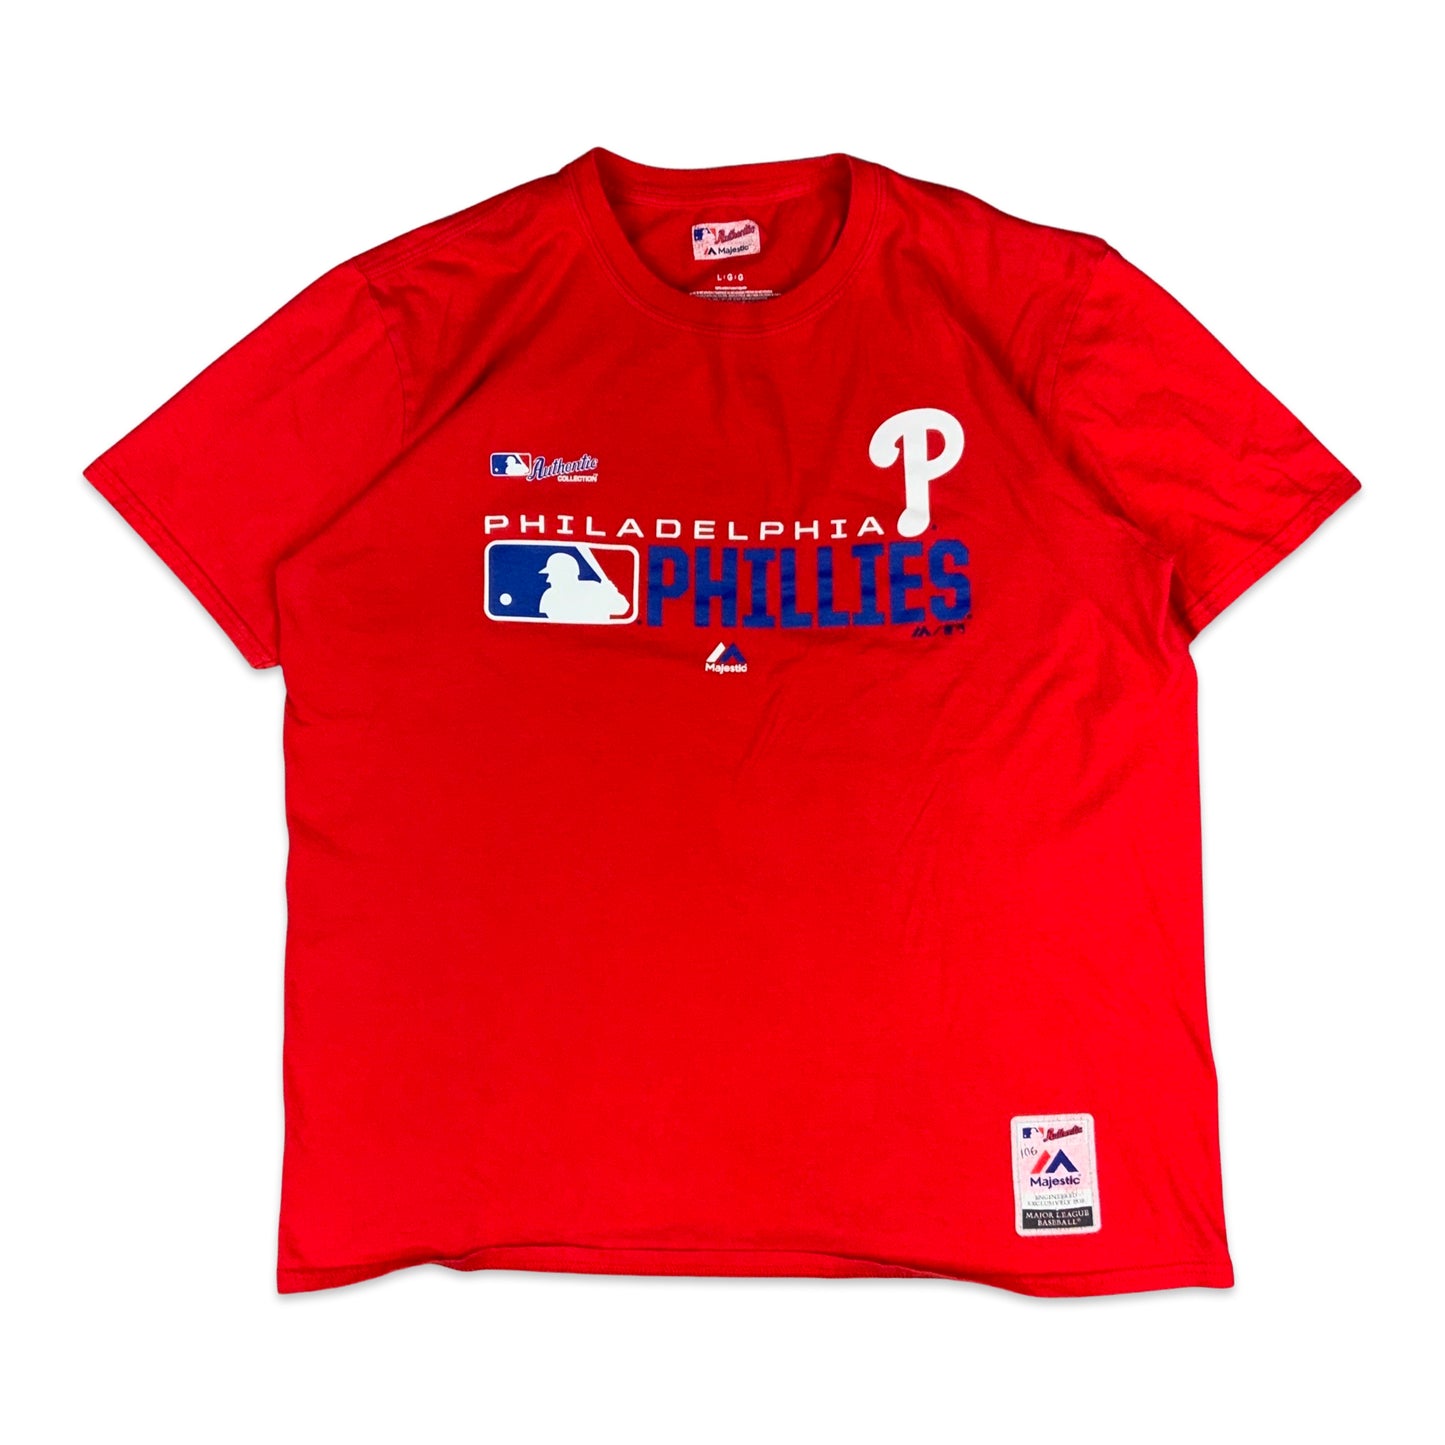 Philadelphia Phillies Red Tee S M